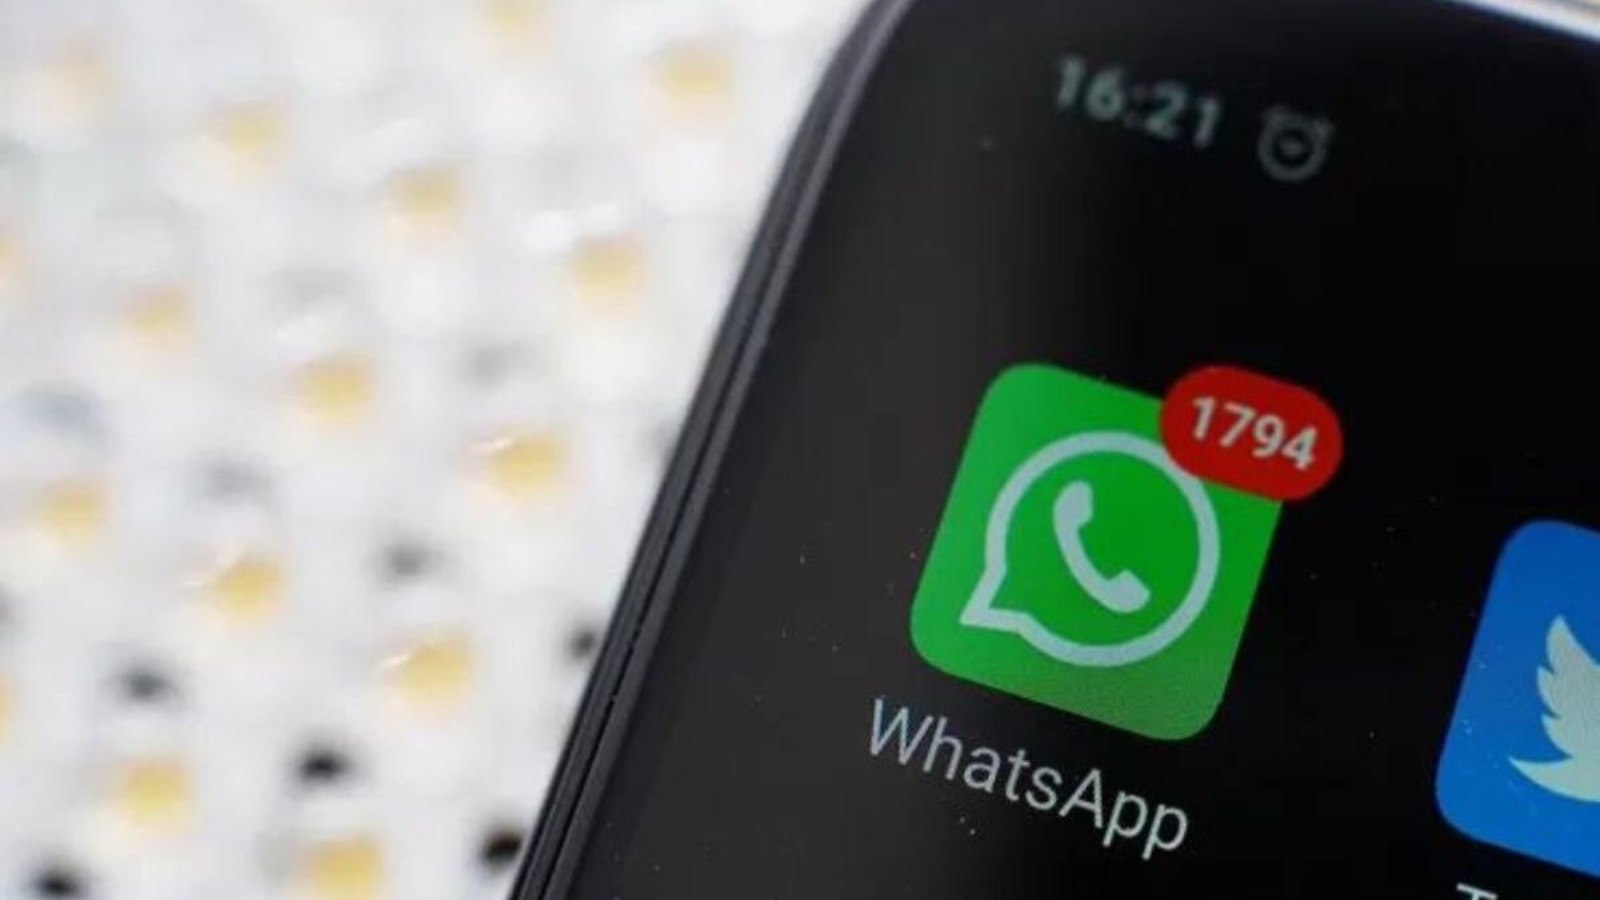 WhatsApp, NOTE AUDIO e messaggi: l'aggiornamento cambia tutto